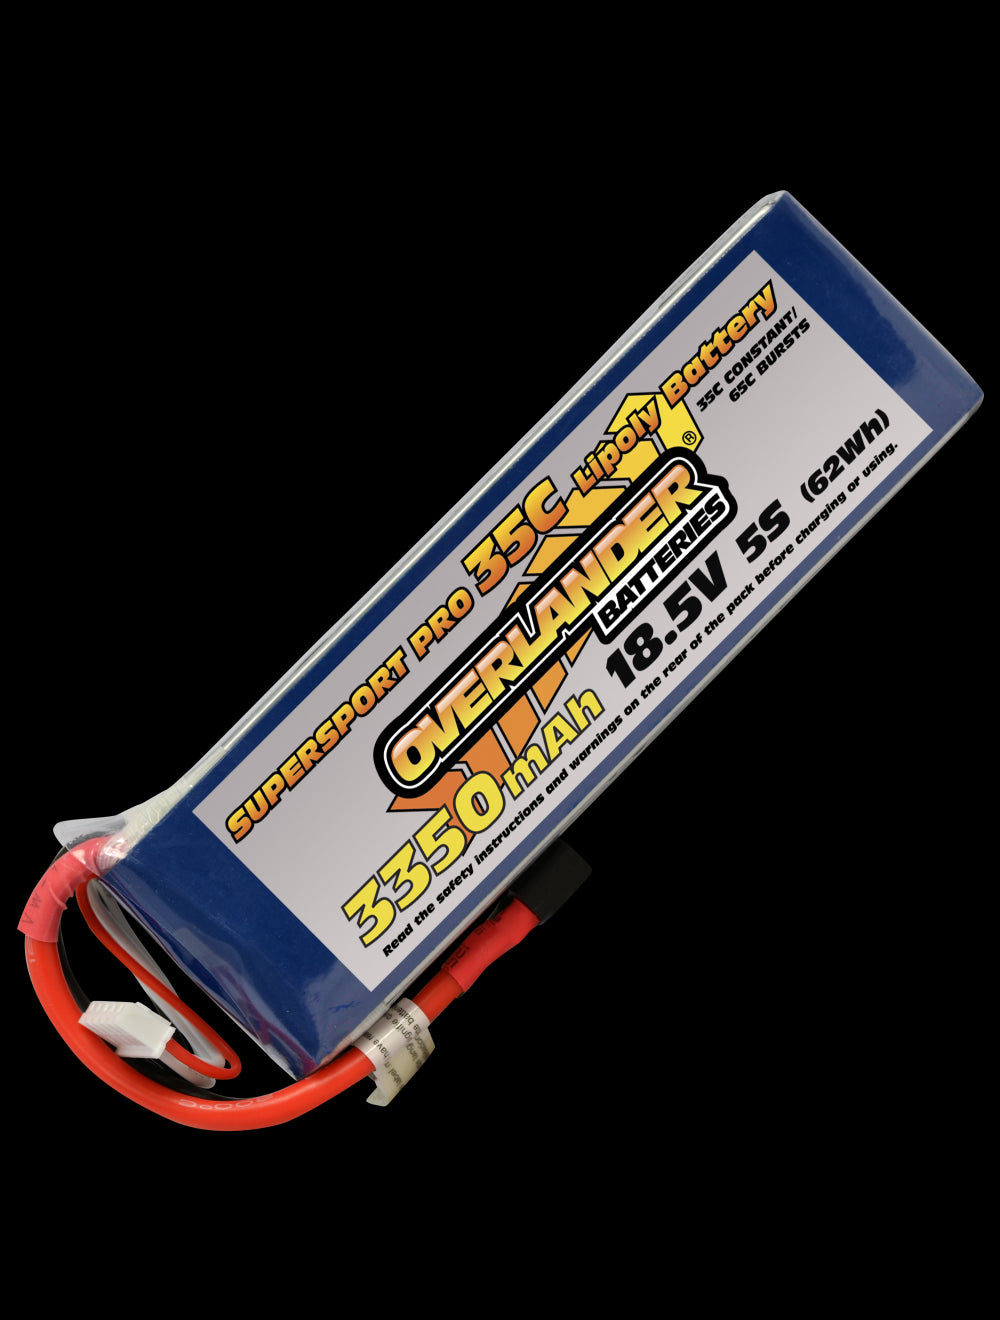 Overlander 3350mAh 18.5V 5S 35C Supersport Pro LiPo Battery - EC5 Connector 3123